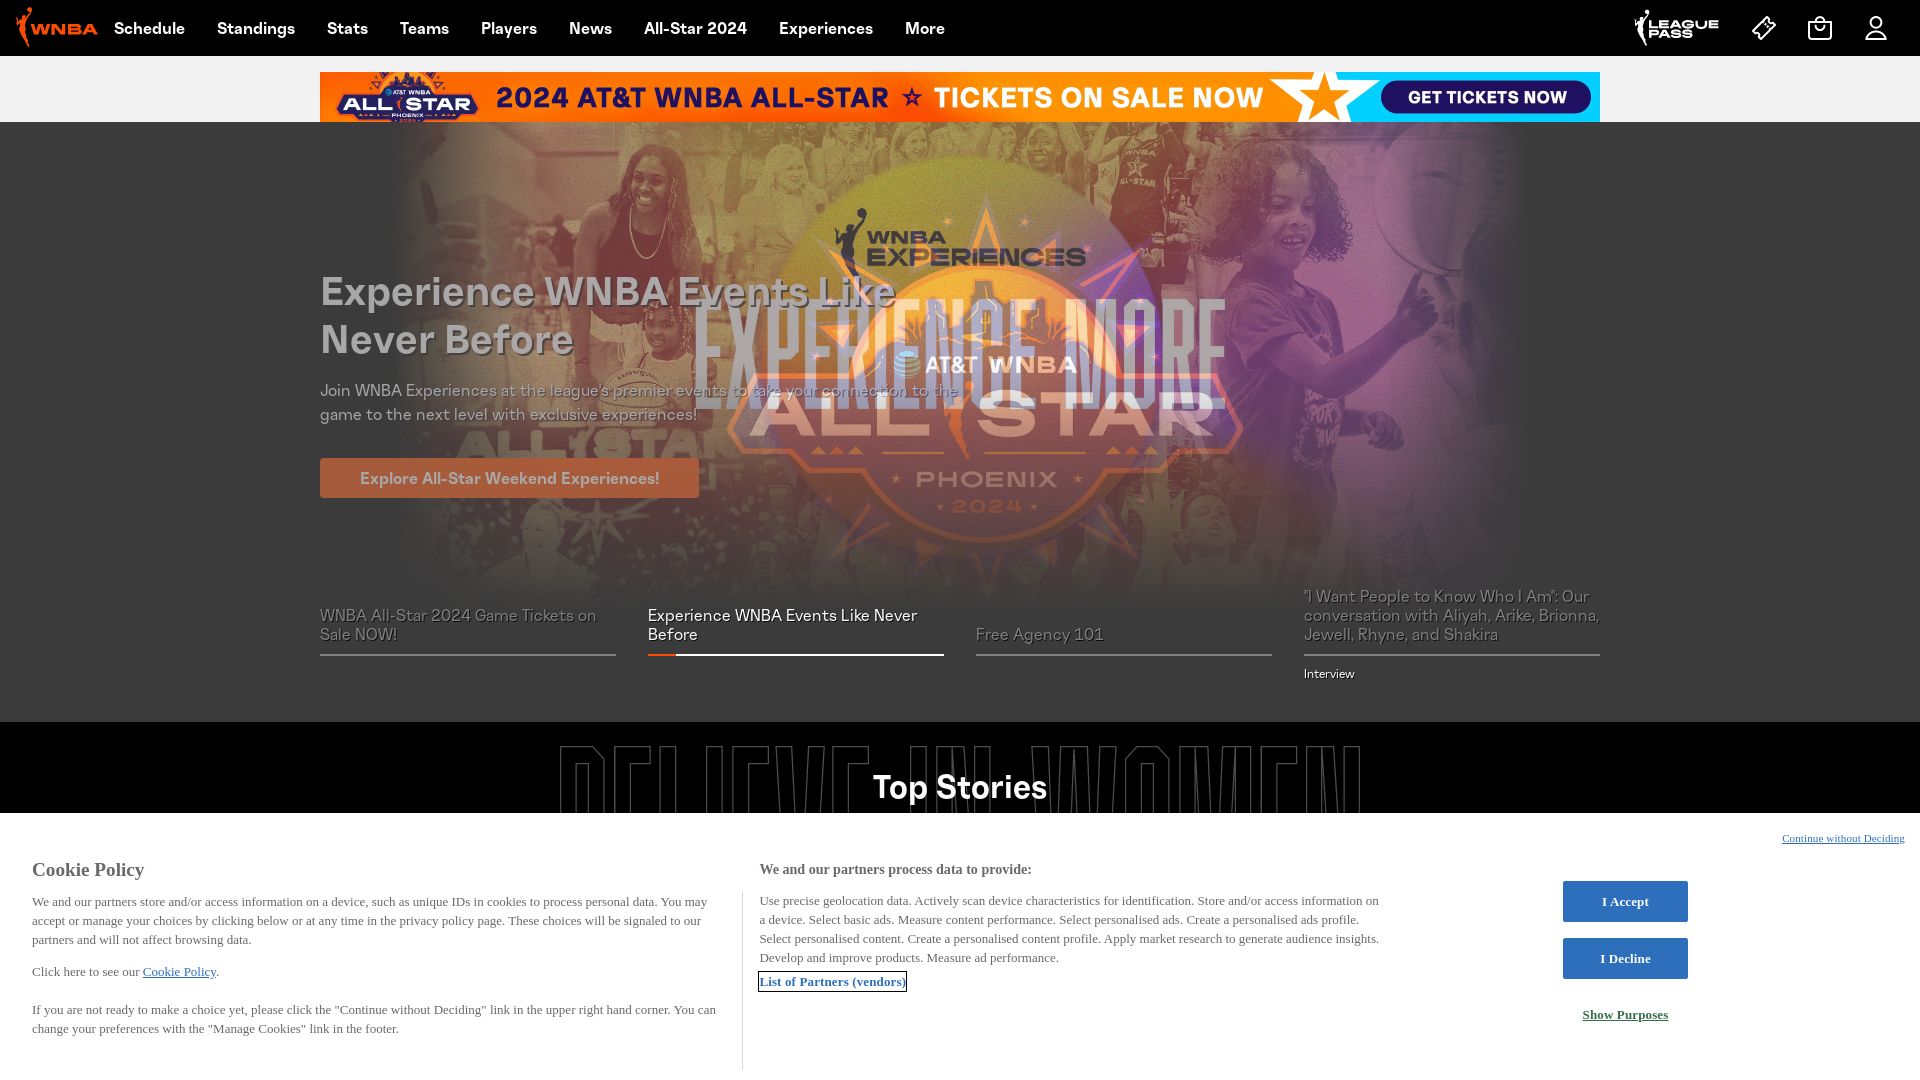 Website status wnba.com is   ONLINE